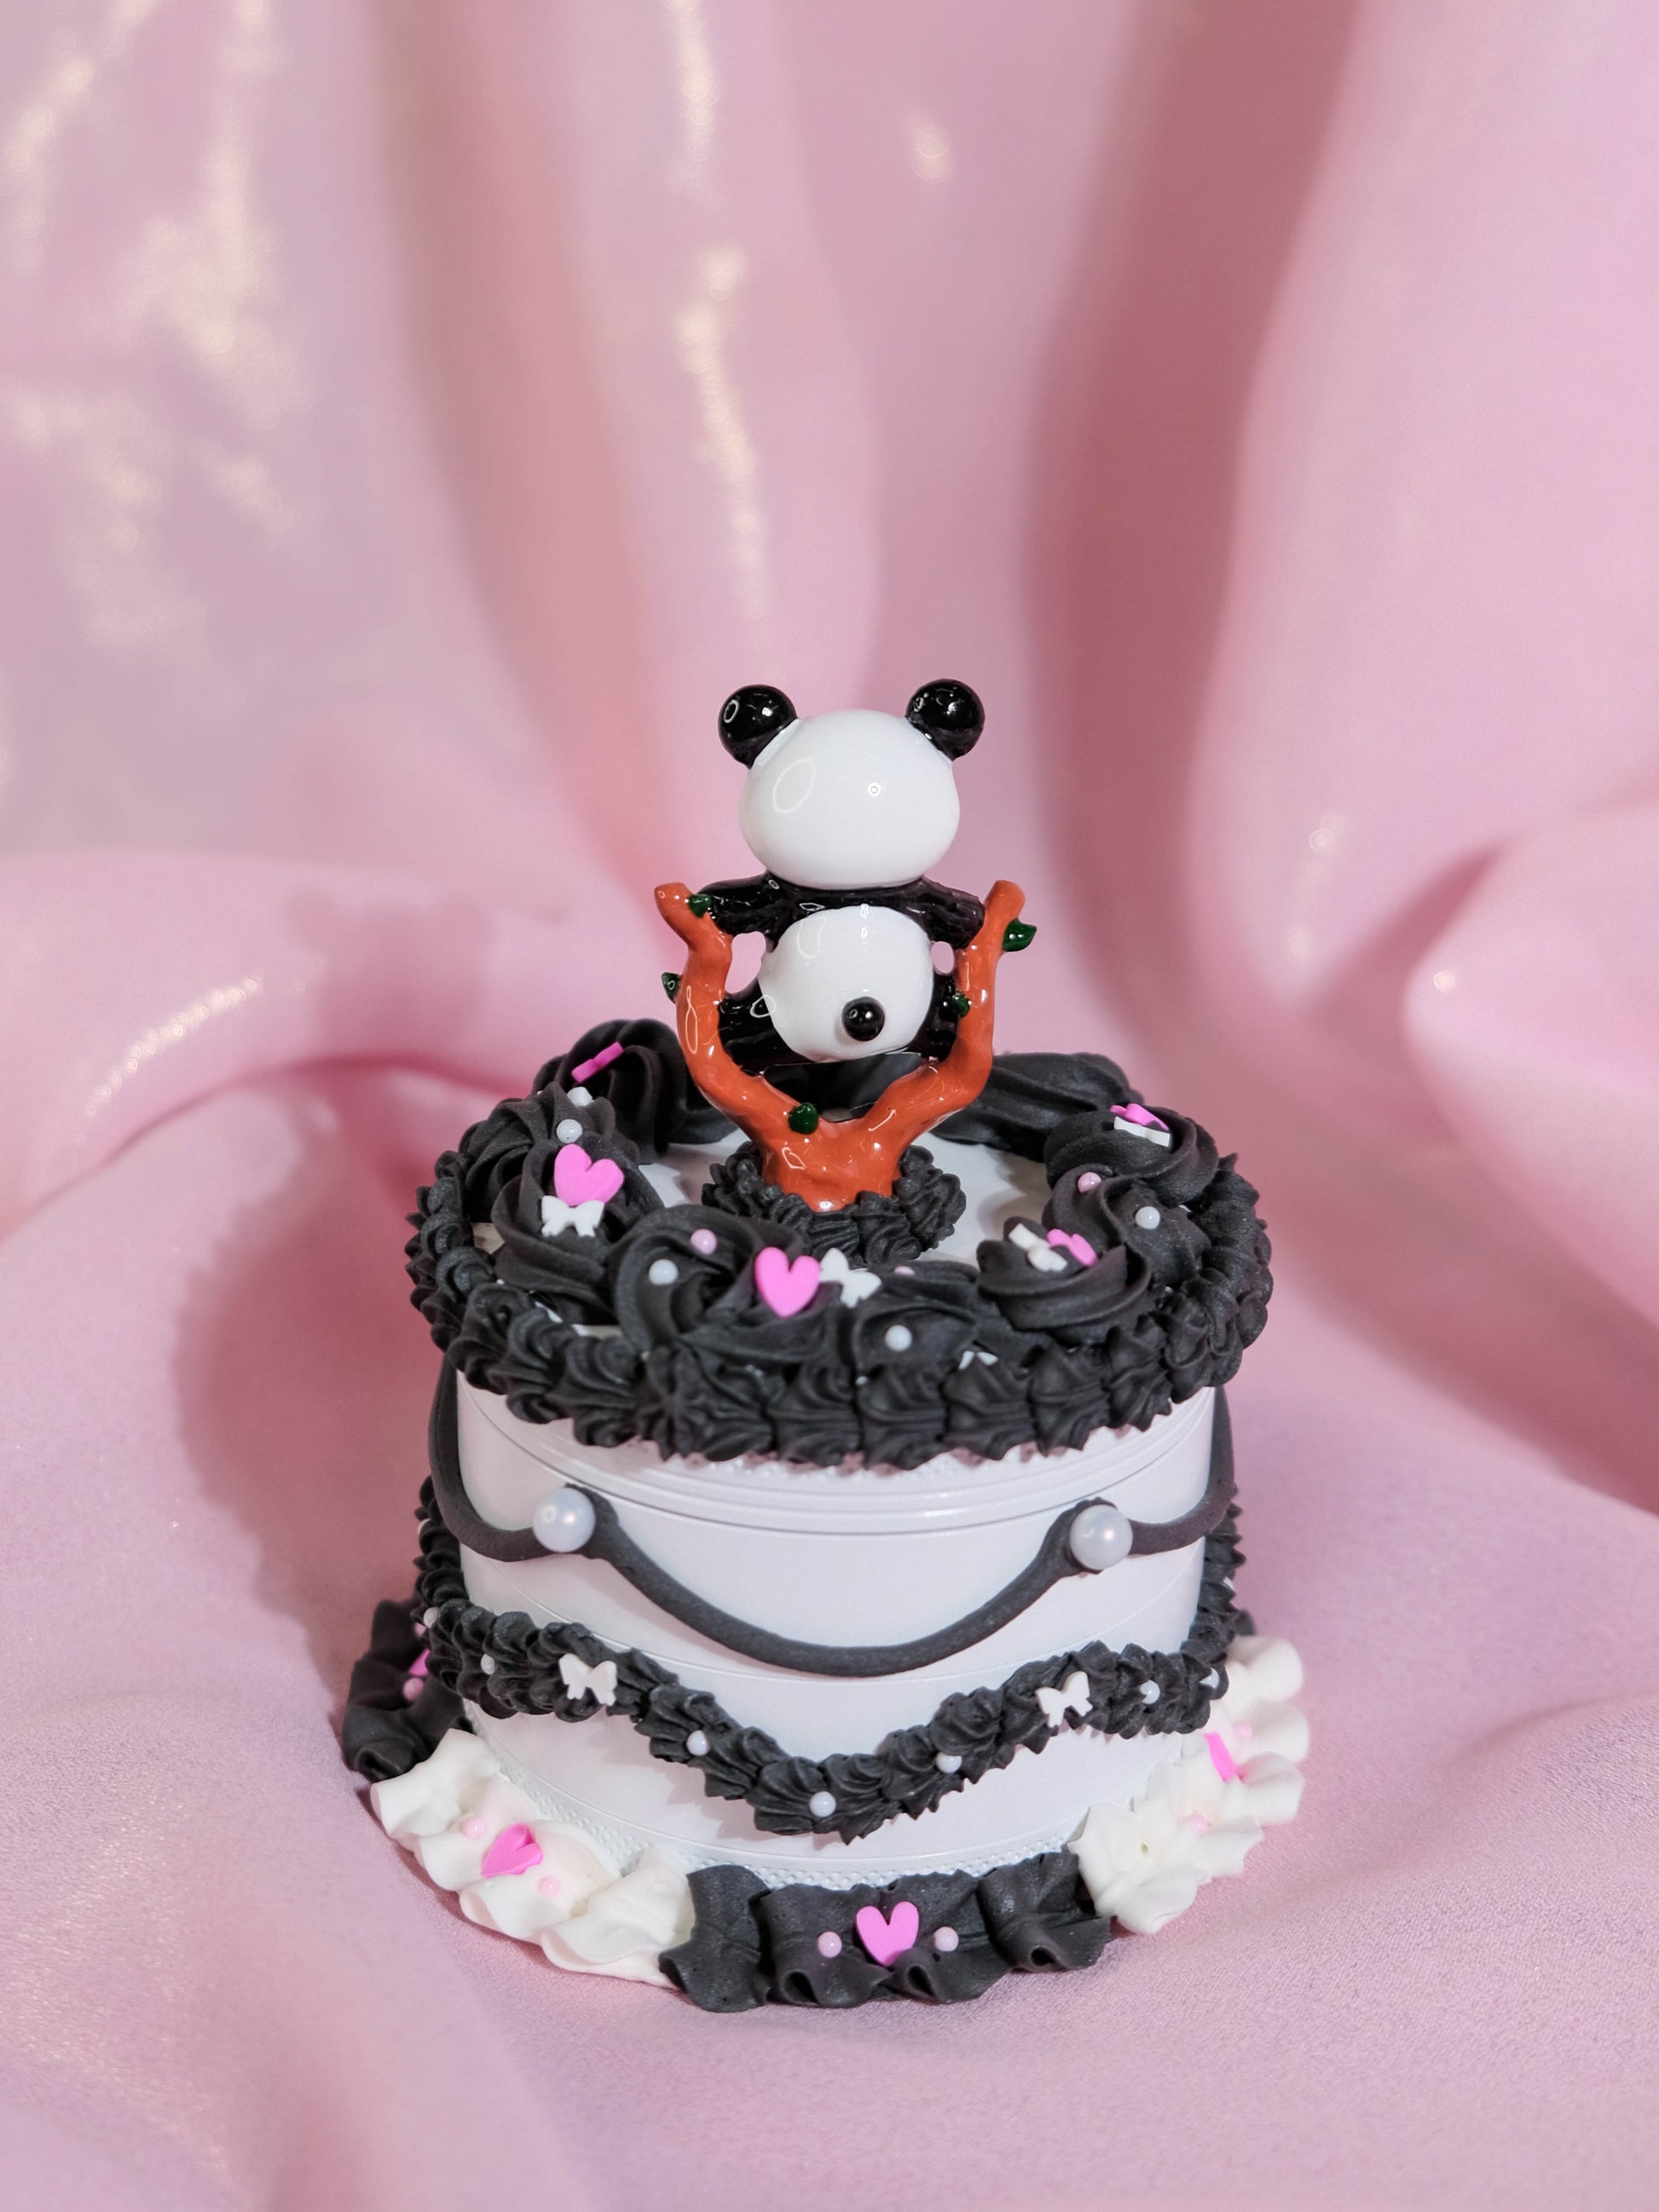 White Chocolate Panda Express Cake - Grinder – 10AM CAKE